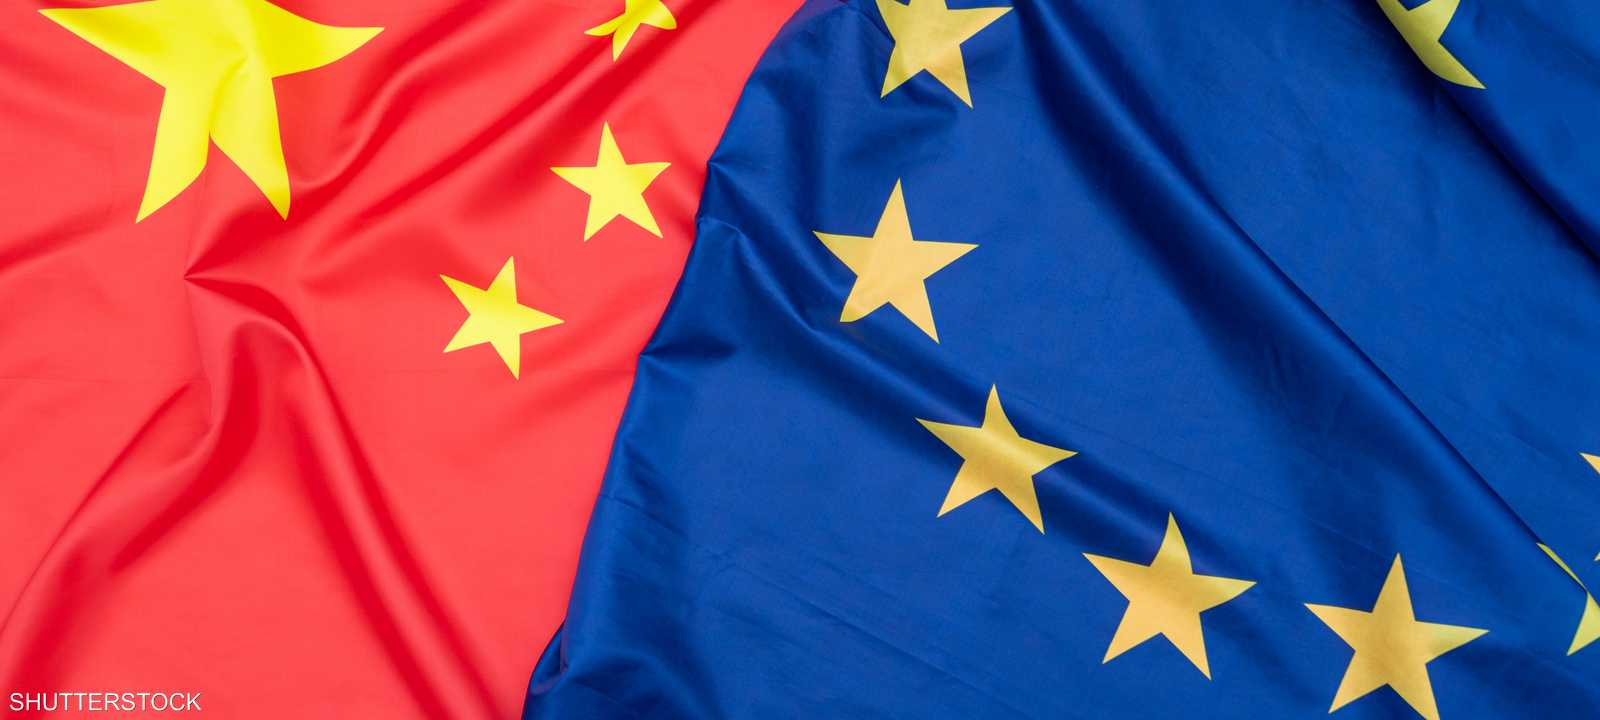 الصين تُهدد استراتيجية "التحول الأخضر" في أوروبا